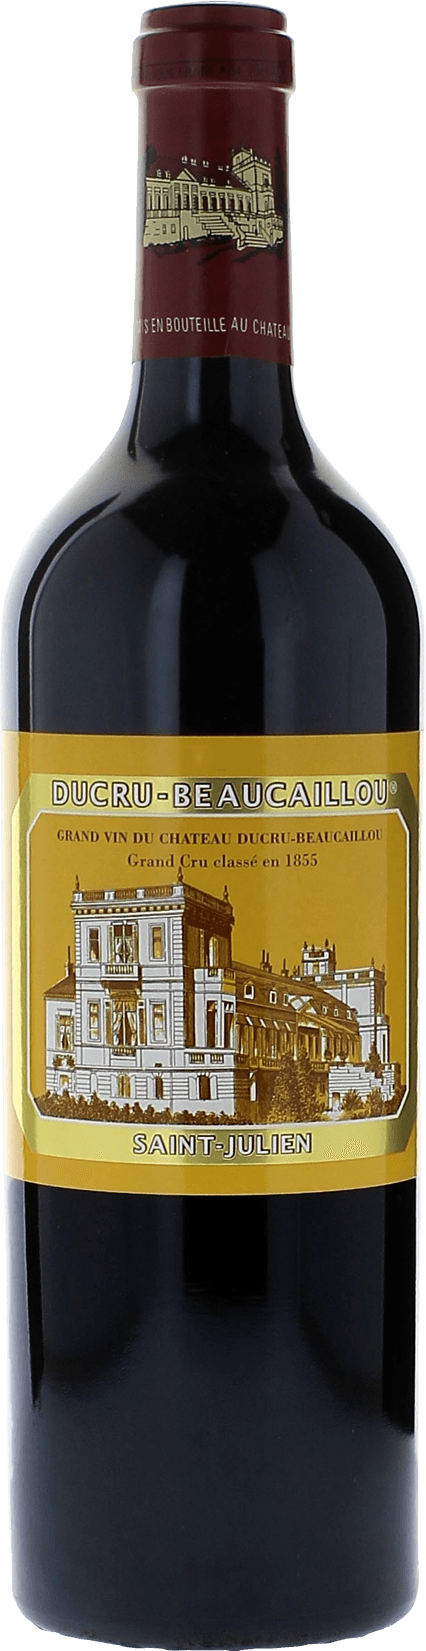 Ducru beaucaillou 1990 2me Grand cru class Saint-Julien, Bordeaux rouge